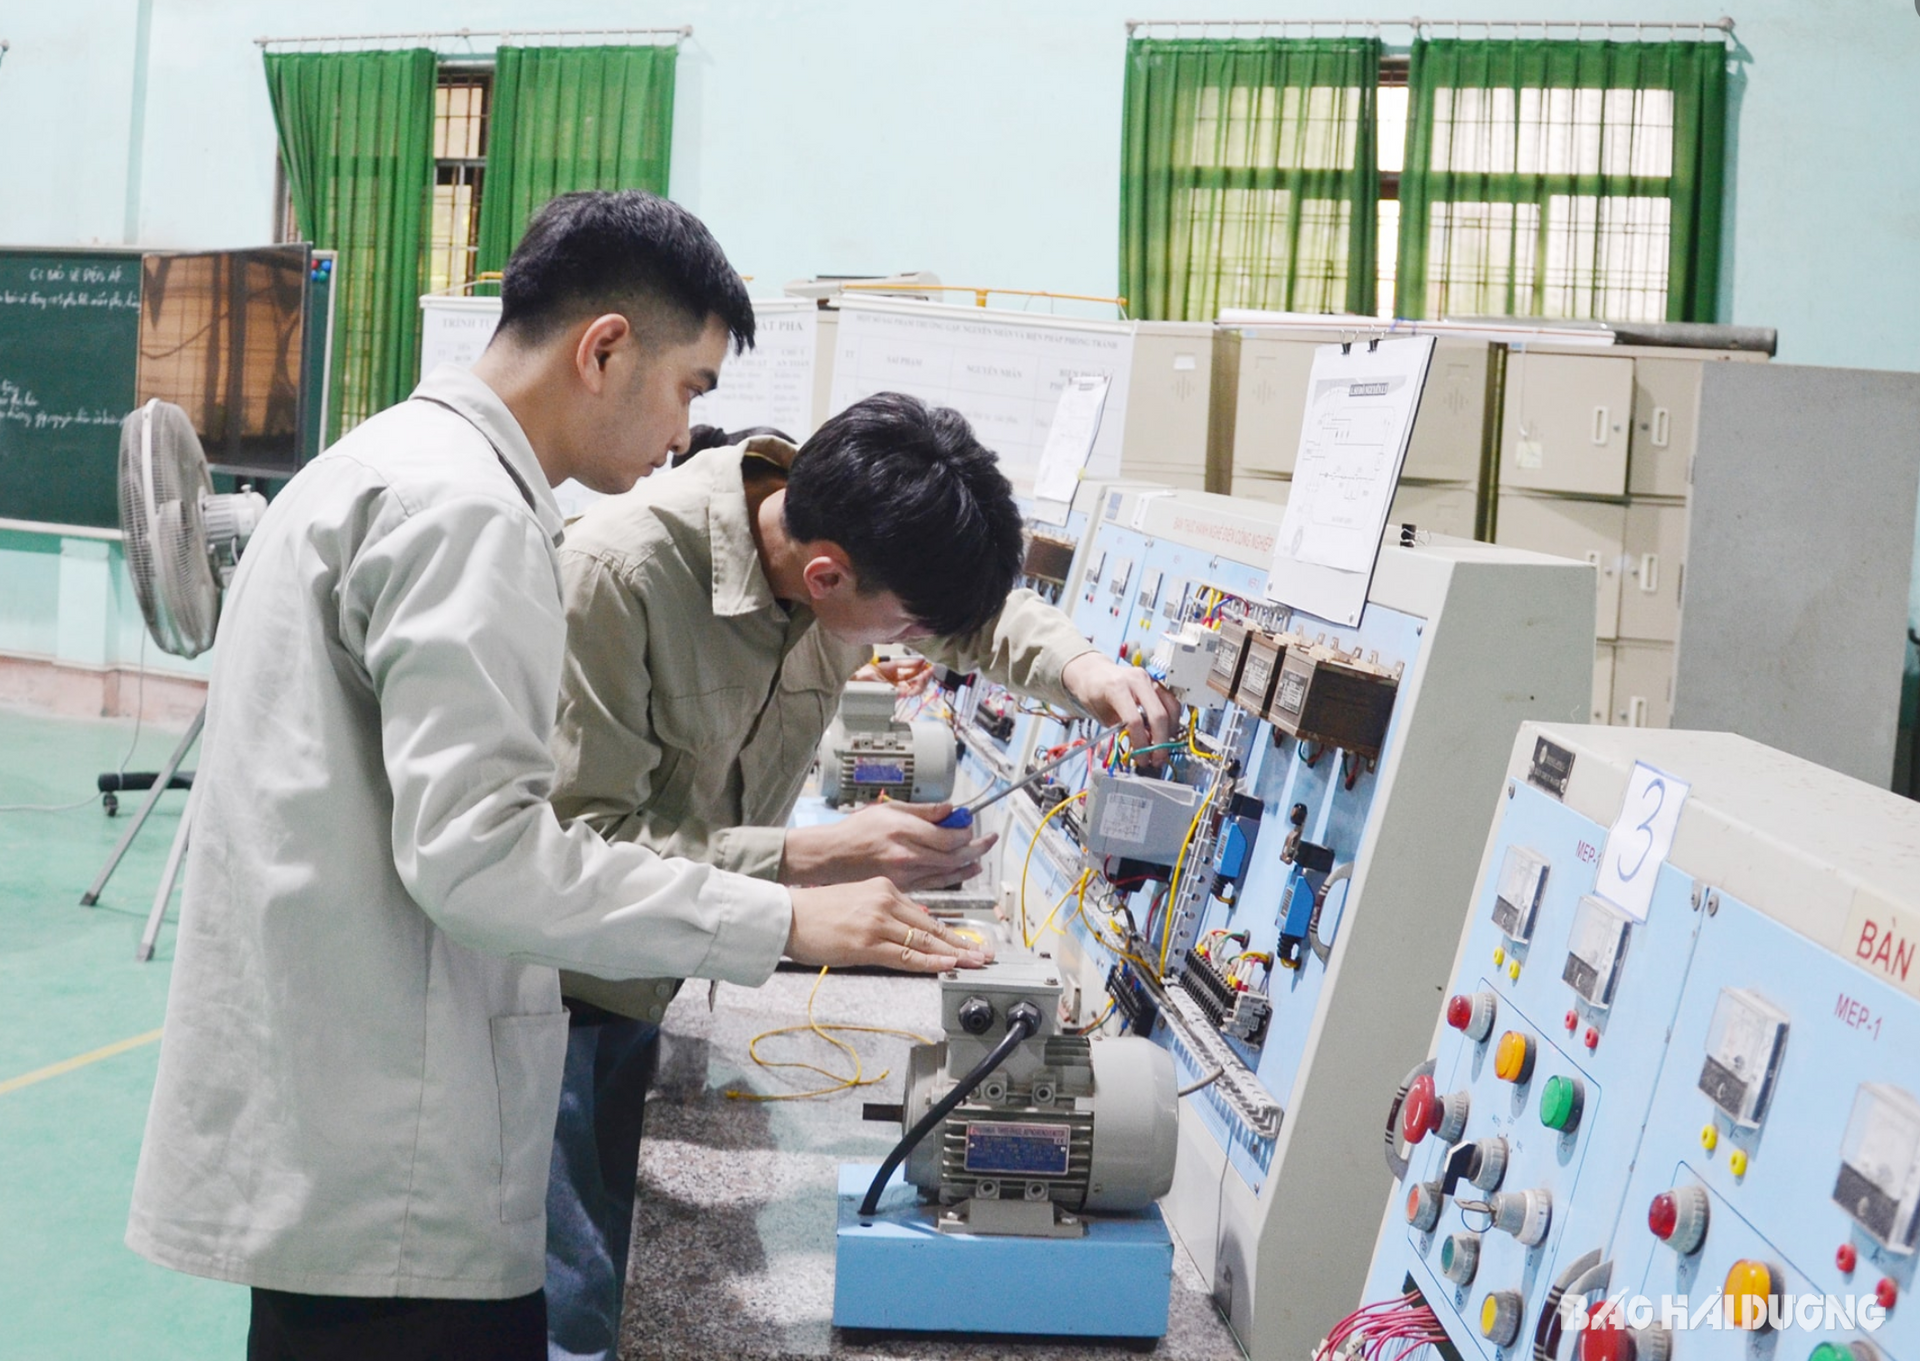 Ảnh trang 1: Hợp tác quốc tế giúp học sinh, sinh viên Trường Cao đẳng Cơ giới xây dựng ở Chí Linh tiếp cận máy móc, thiết bị hiện đại